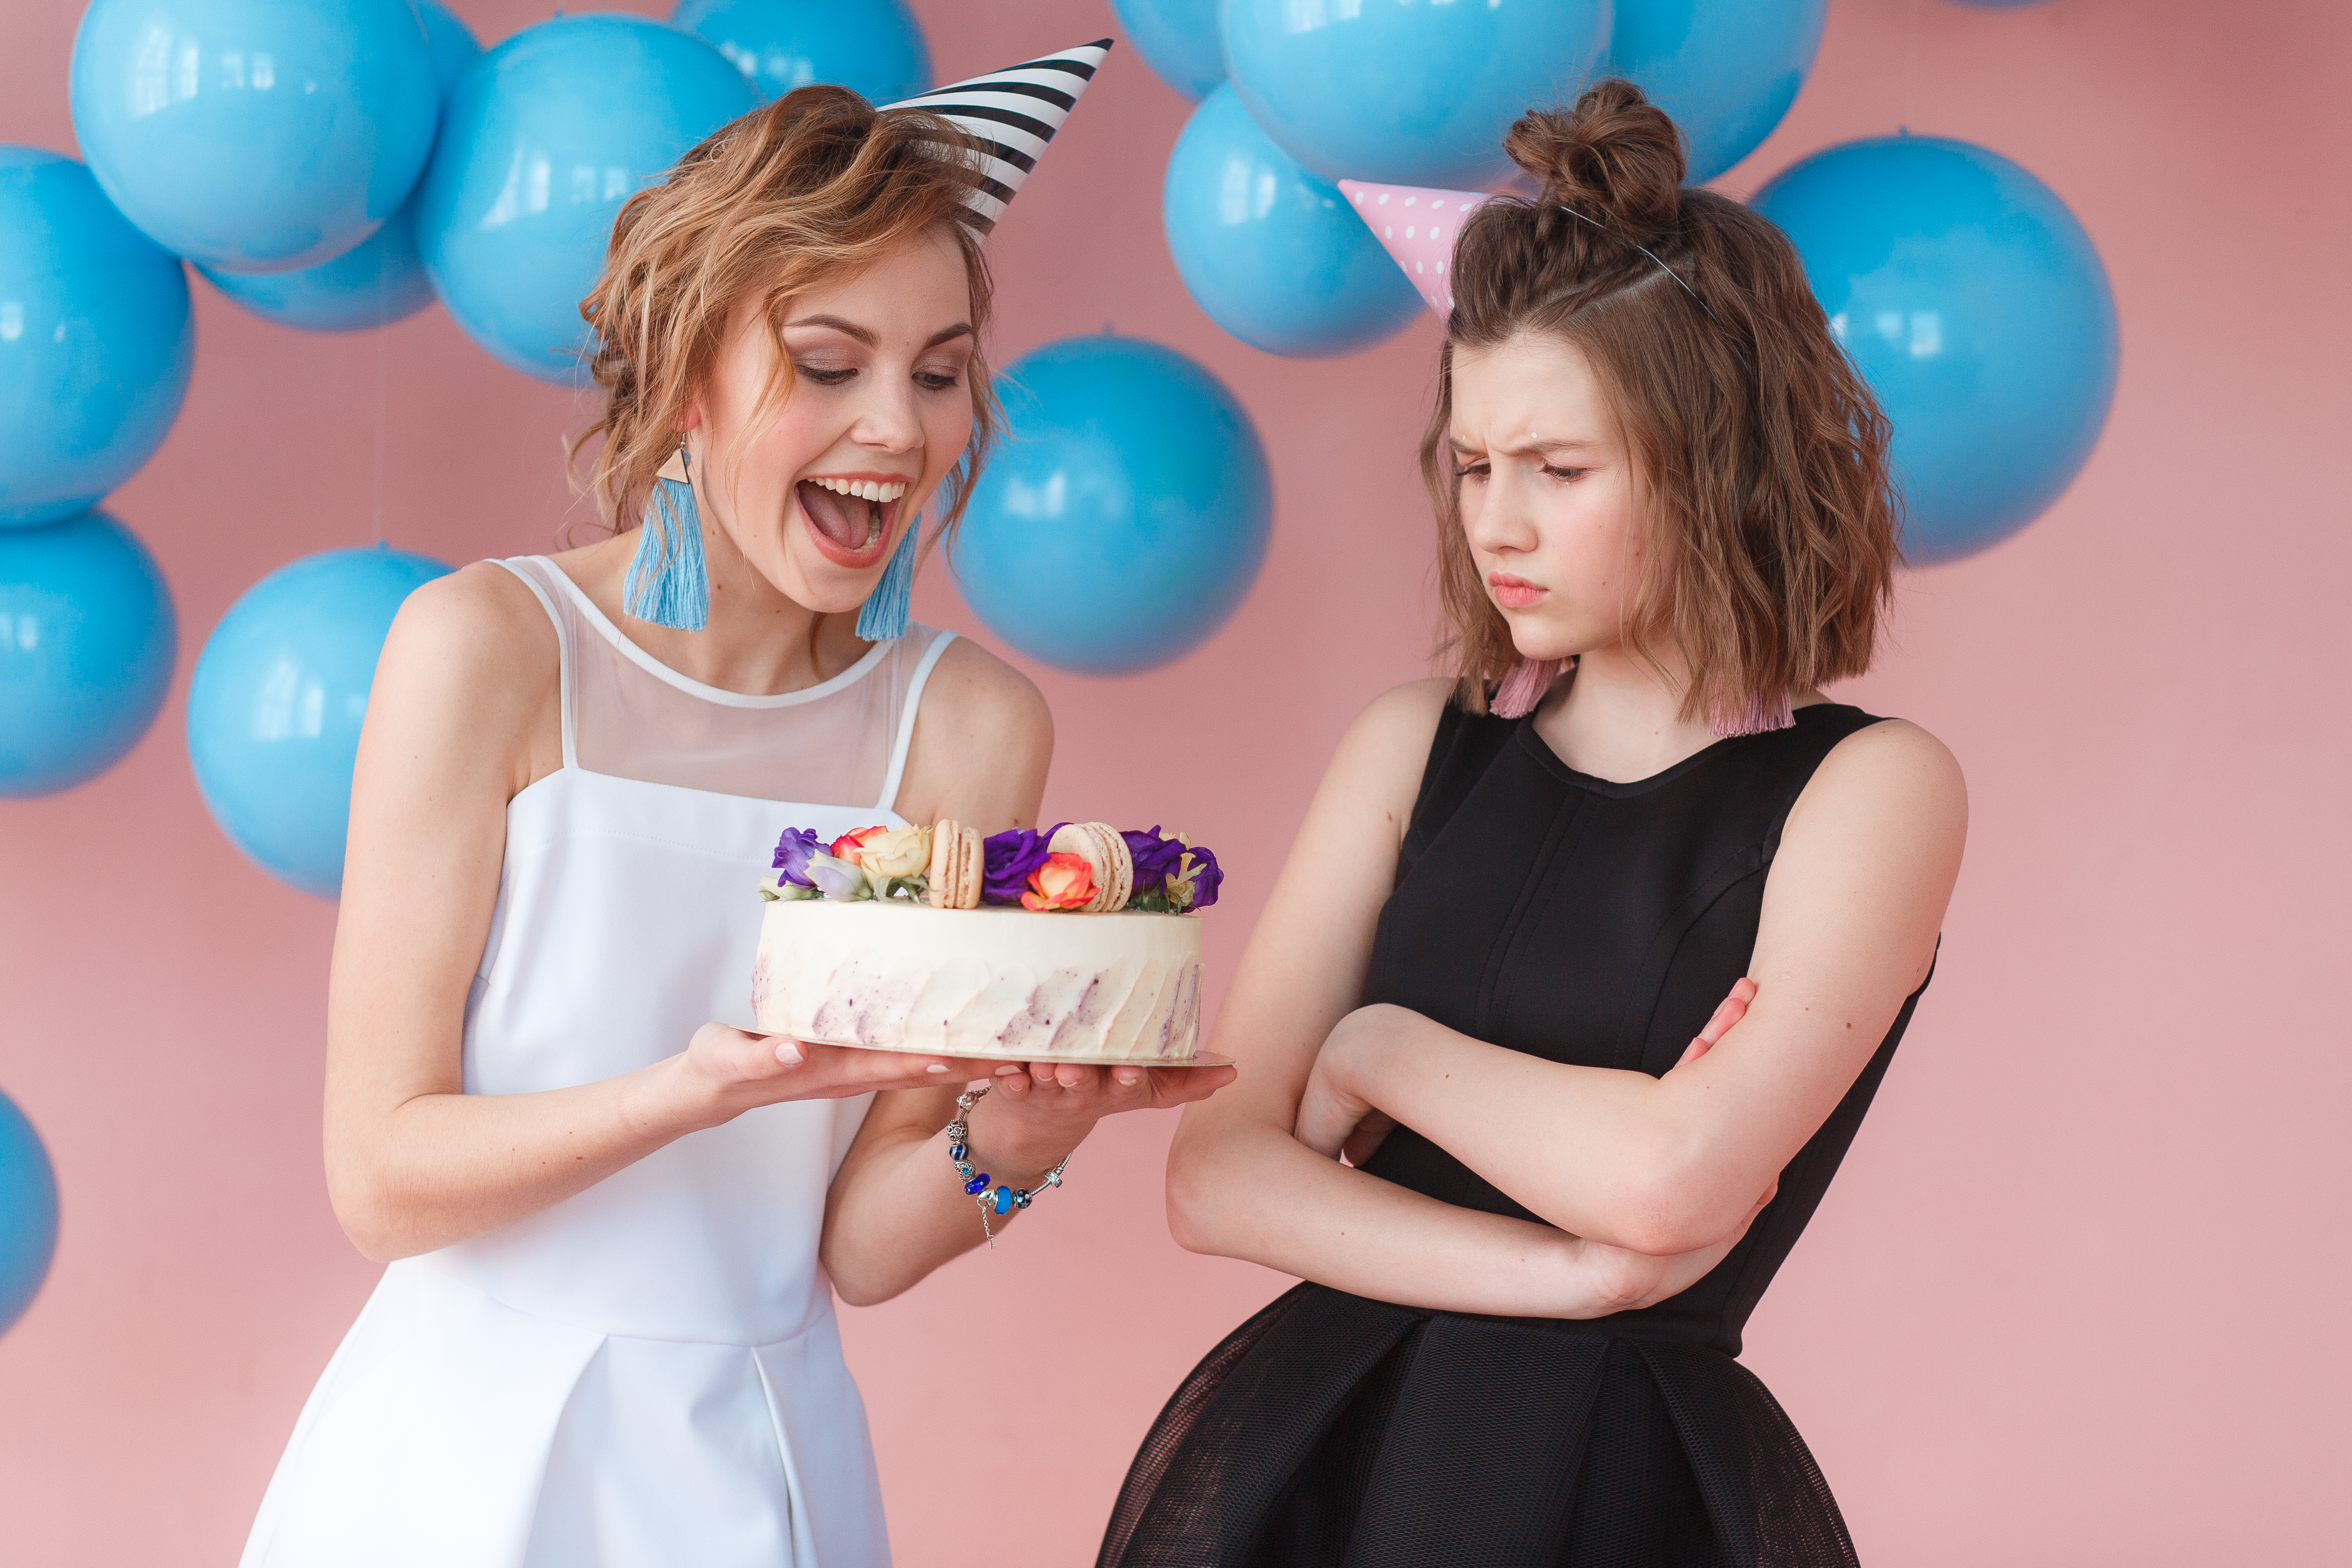 Dos adolescentes sosteniendo un pastel de cumpleaños, una sonriendo y la otra frunciendo el ceño | Fuente: Freepik